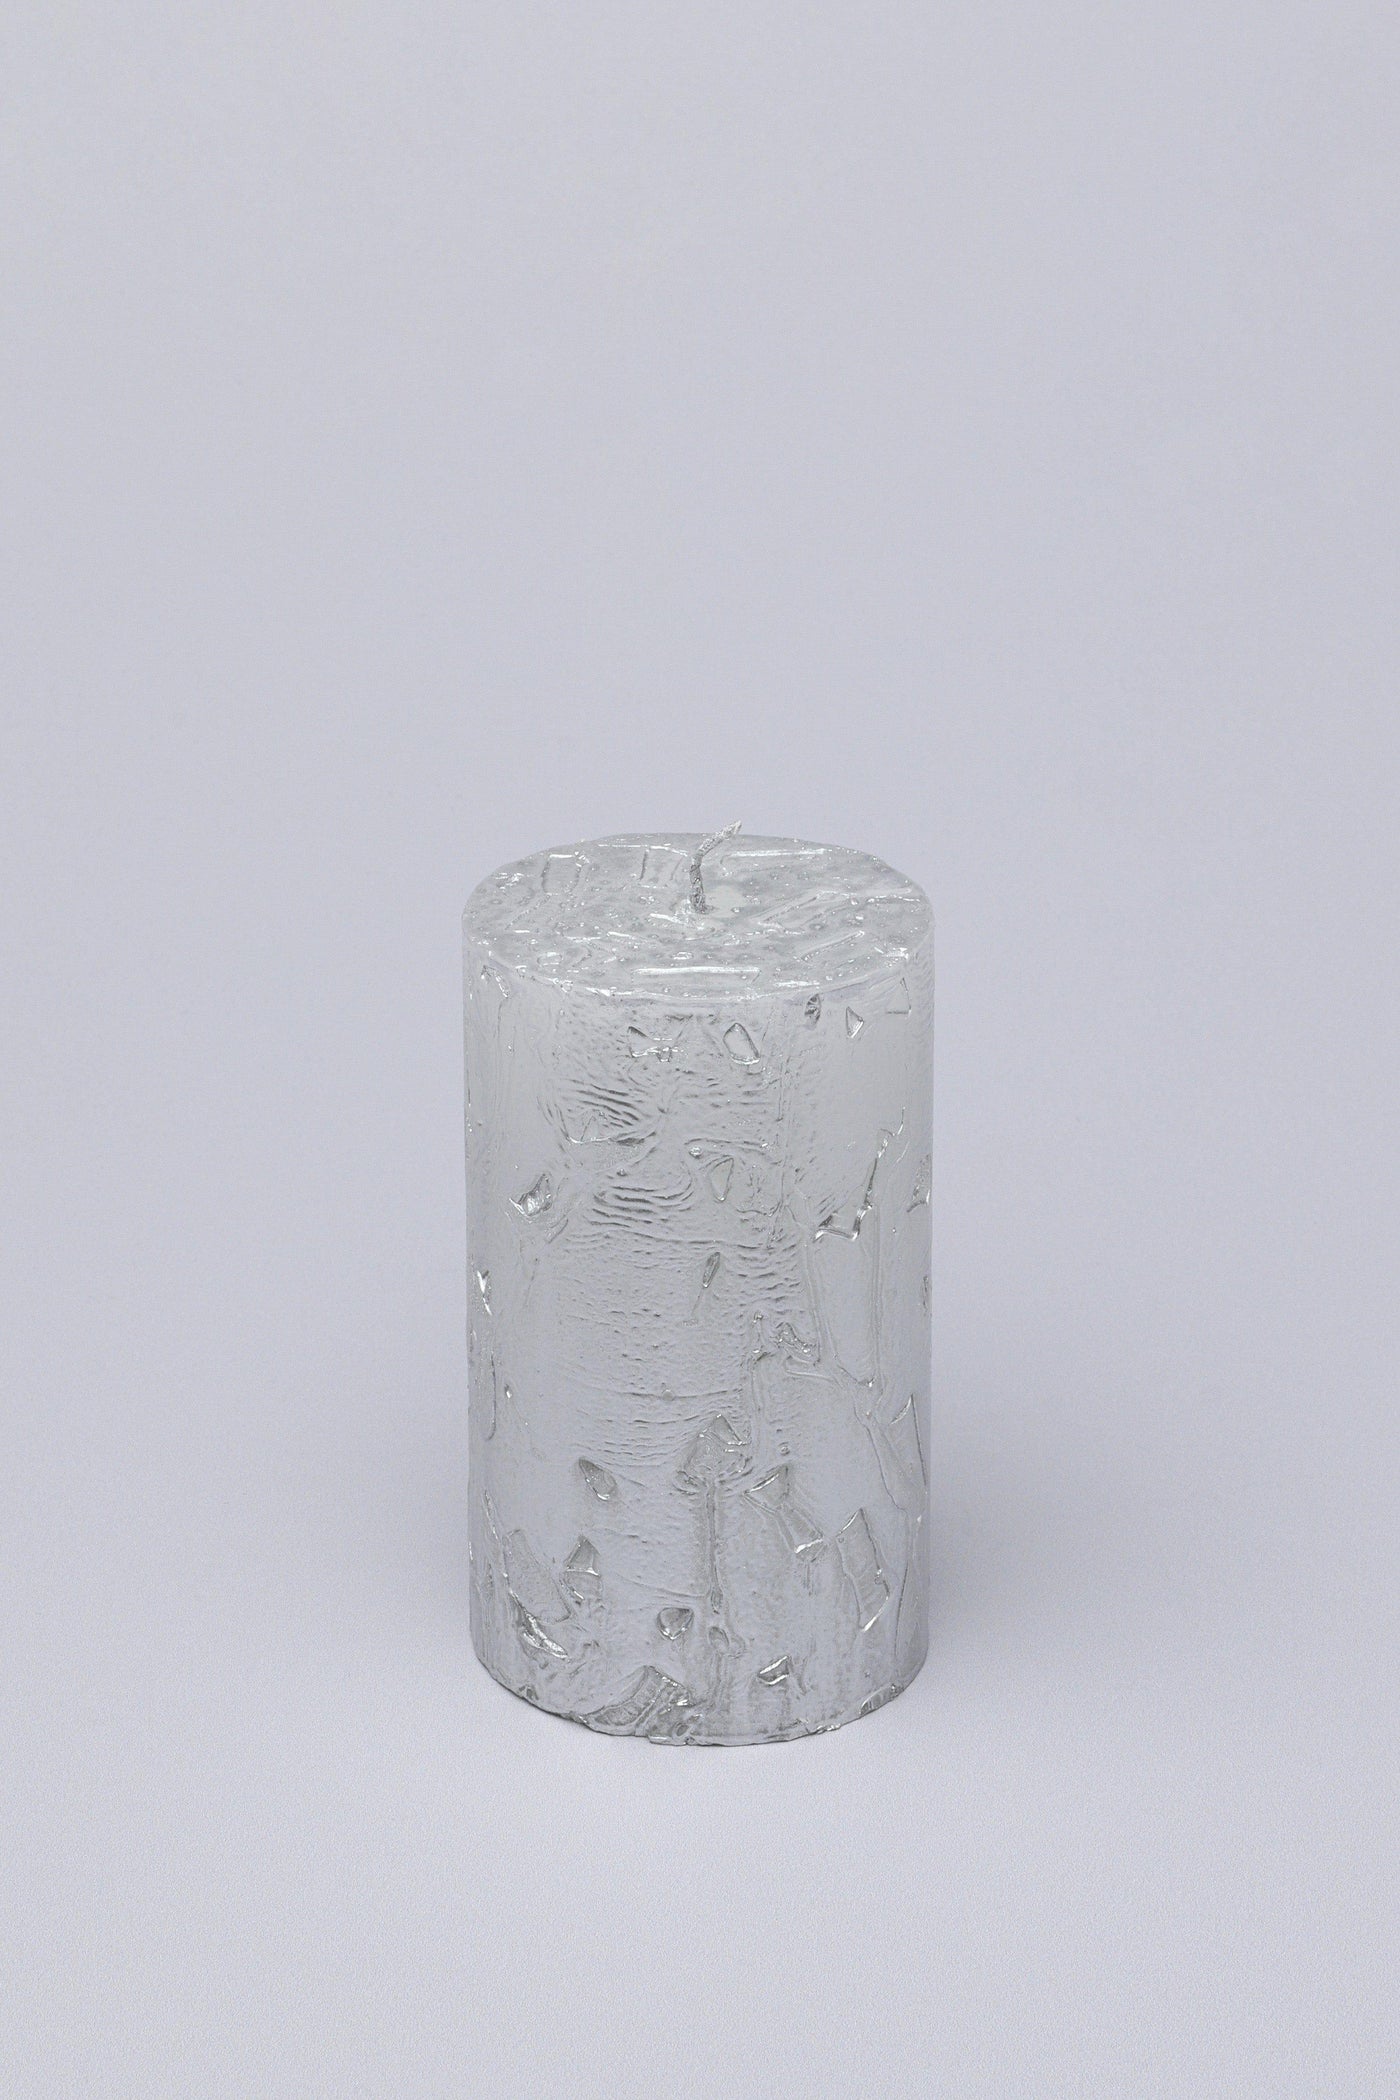 G Decor Candles Silver / Medium Adeline Silver Metallic Textured Pillar Candle